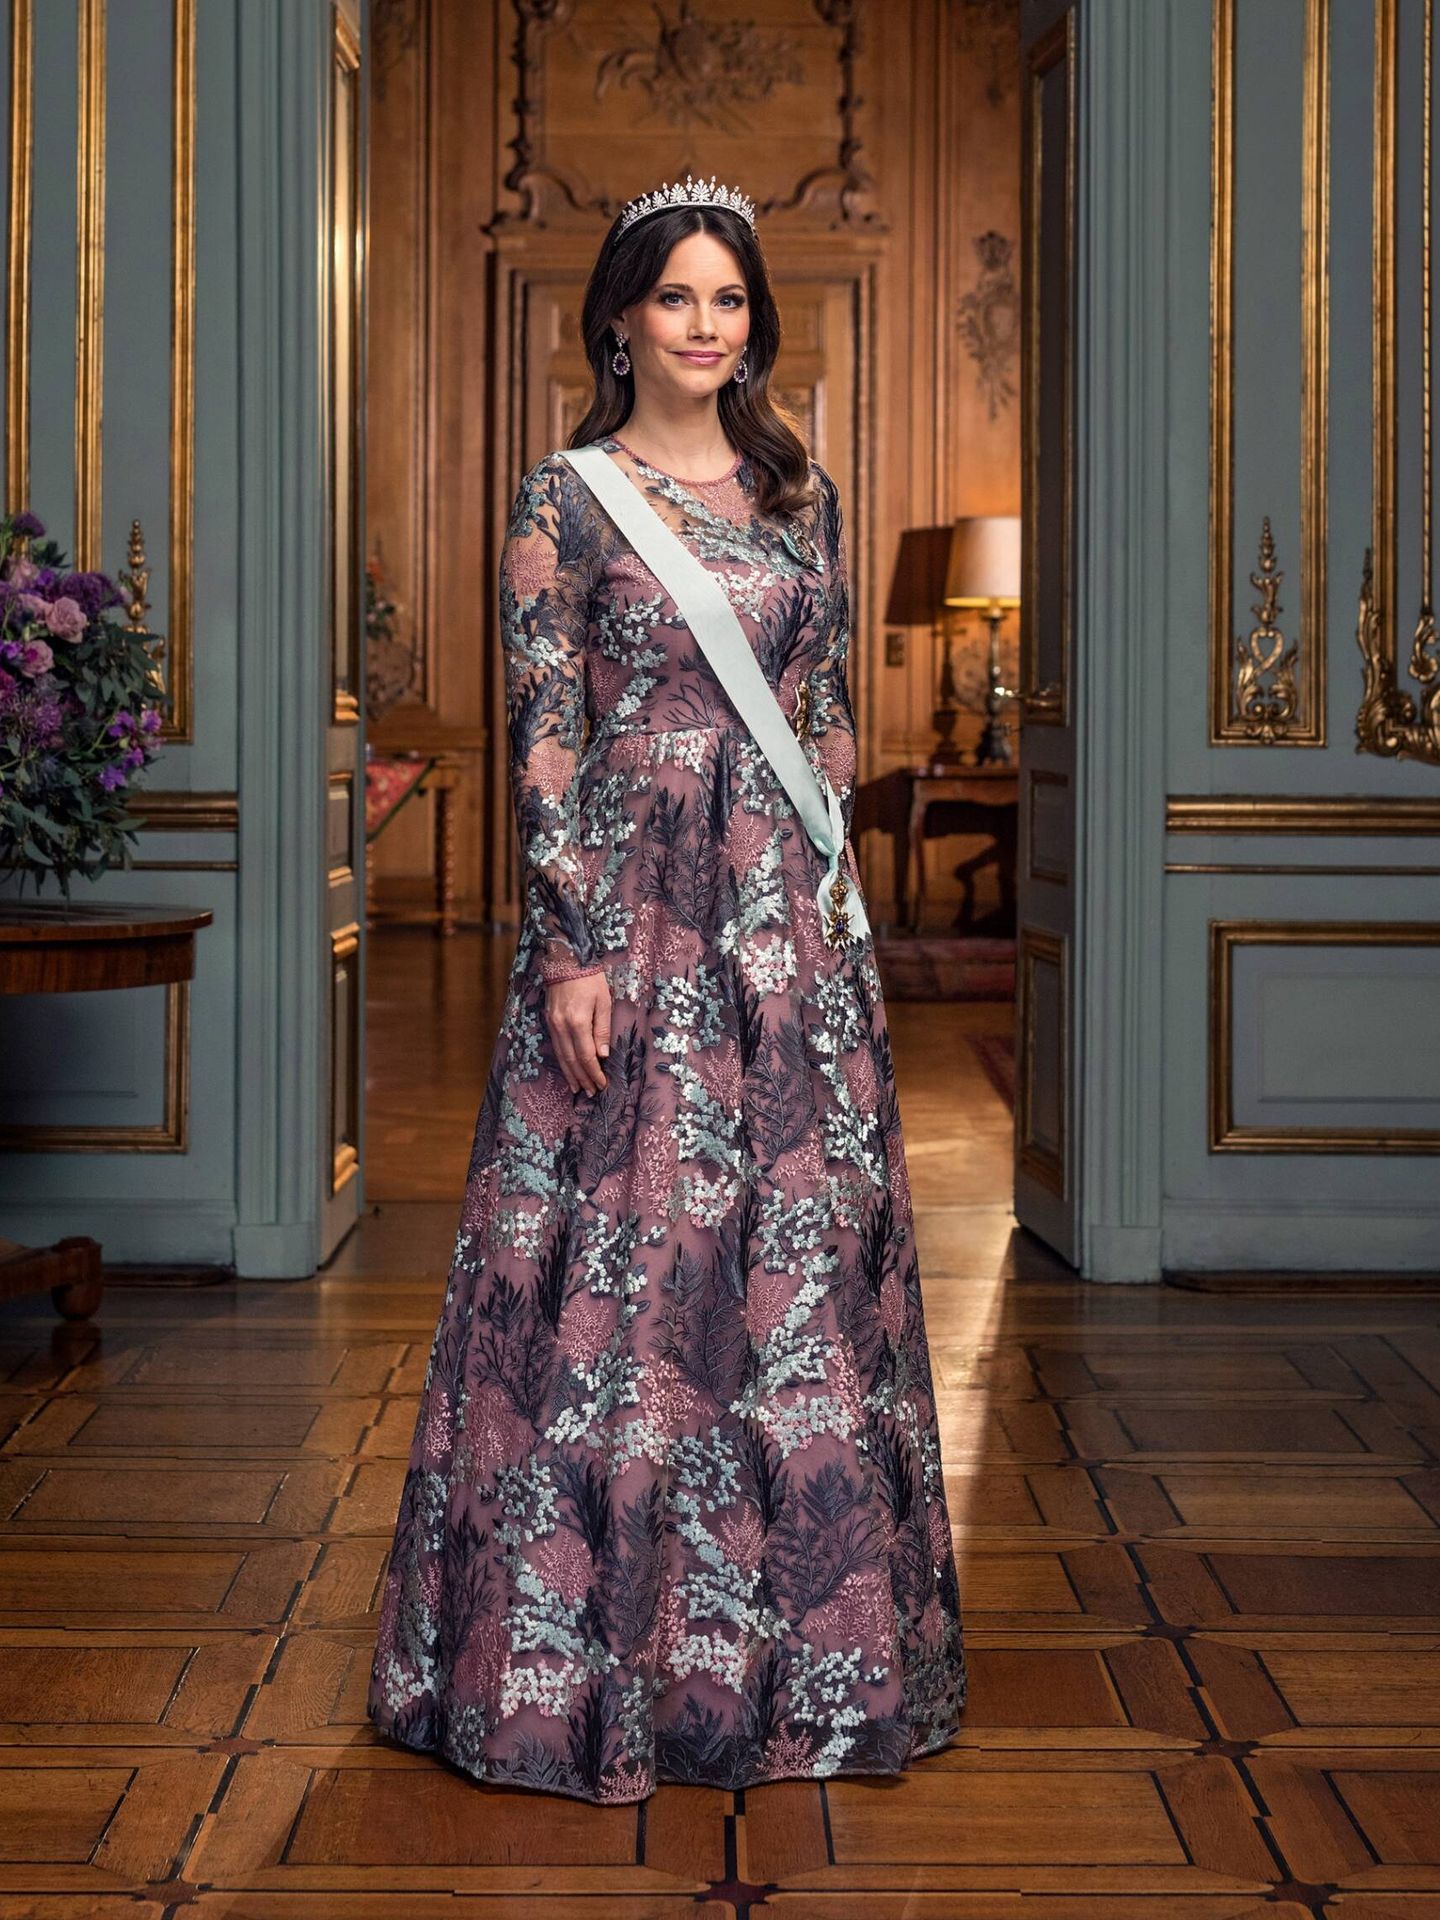 La princesa Sofía. (Casa Real de Suecia/Linda Broström)